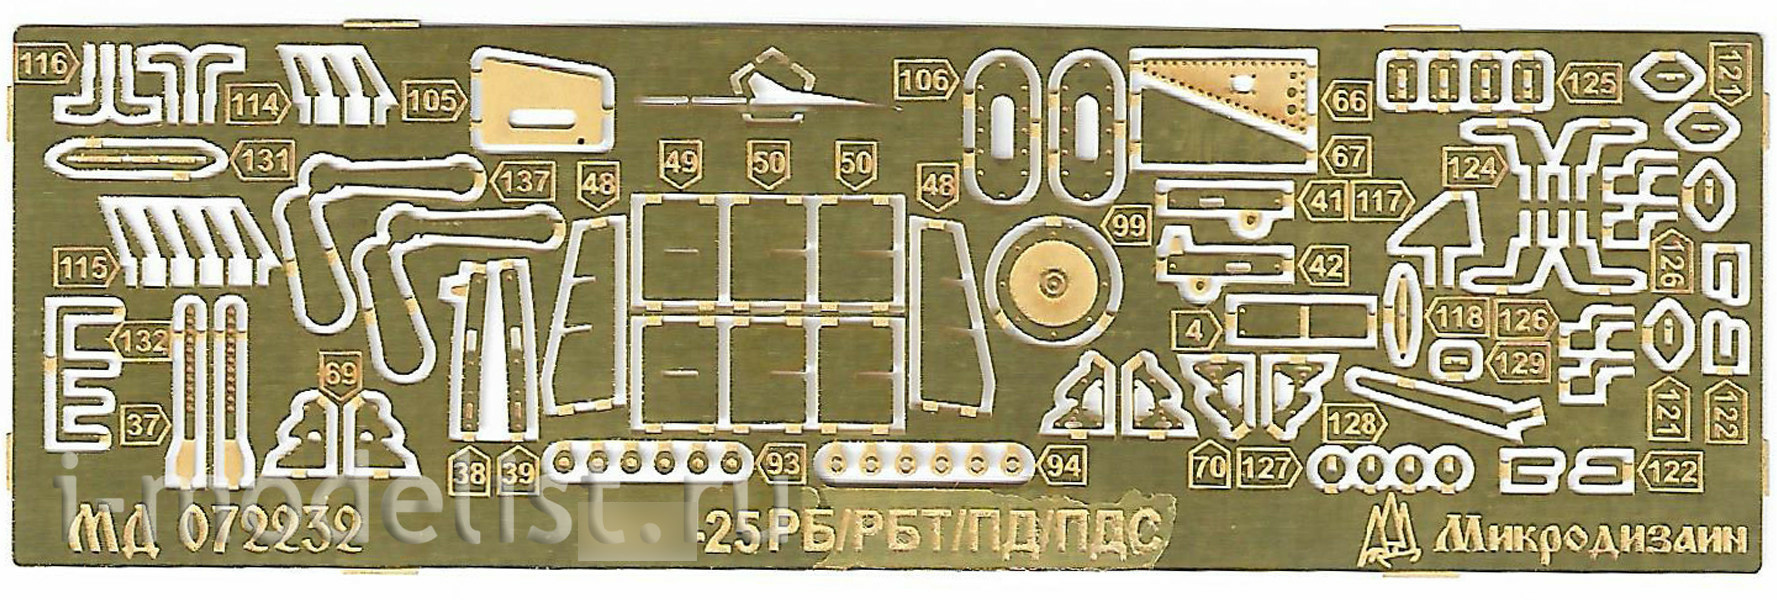 072232 Microdesign 1/72 MiGG-25